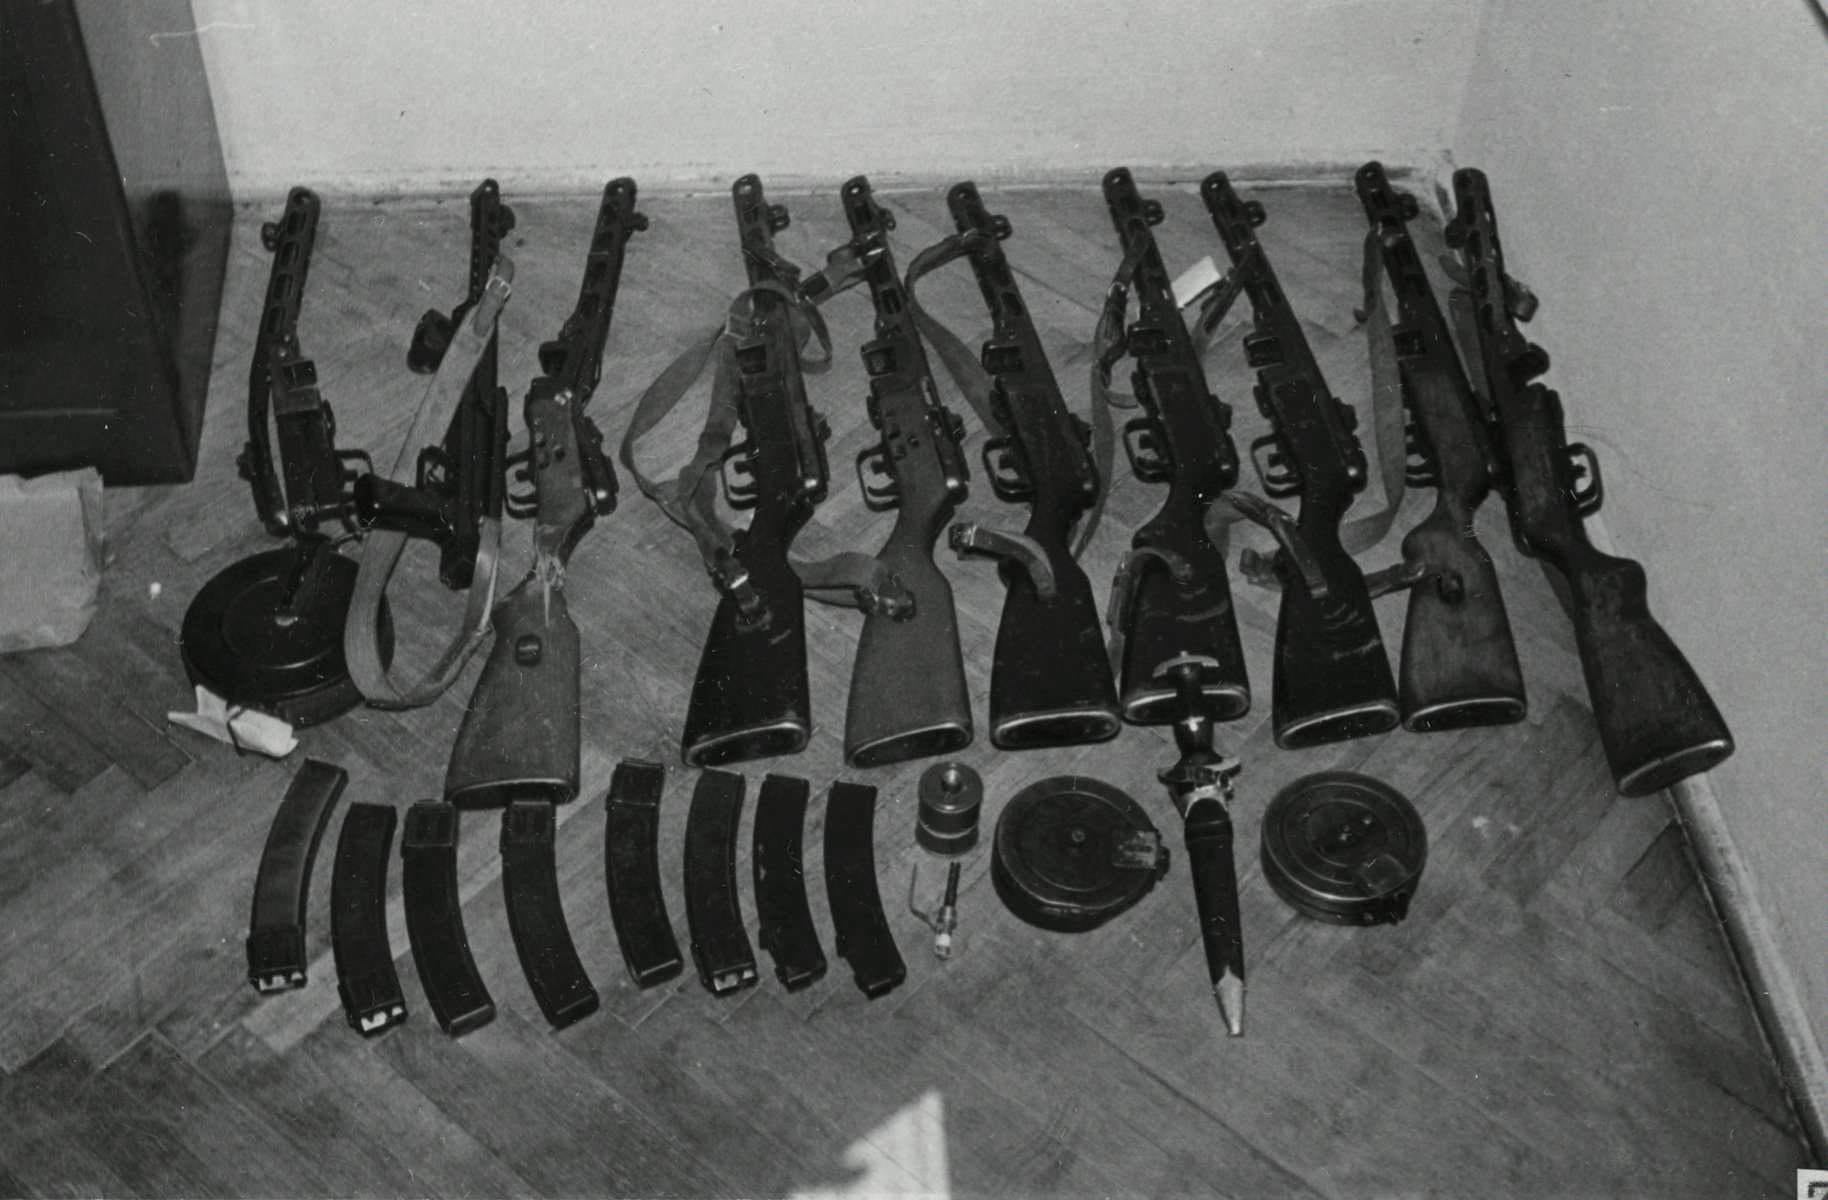 Czarno-biała fotografia kilku sztuk różnego rodzaju broni leżącej na podłodze pomieszczenia. Broń została użyta przez demonstrantów 28 czerwca 1956 roku podczas walk pod Wojewódzkim Urzędem do spraw Bezpieczeństwa. Fotografia była materiałem dowodowym w aktach śledczych procesów. - grafika artykułu